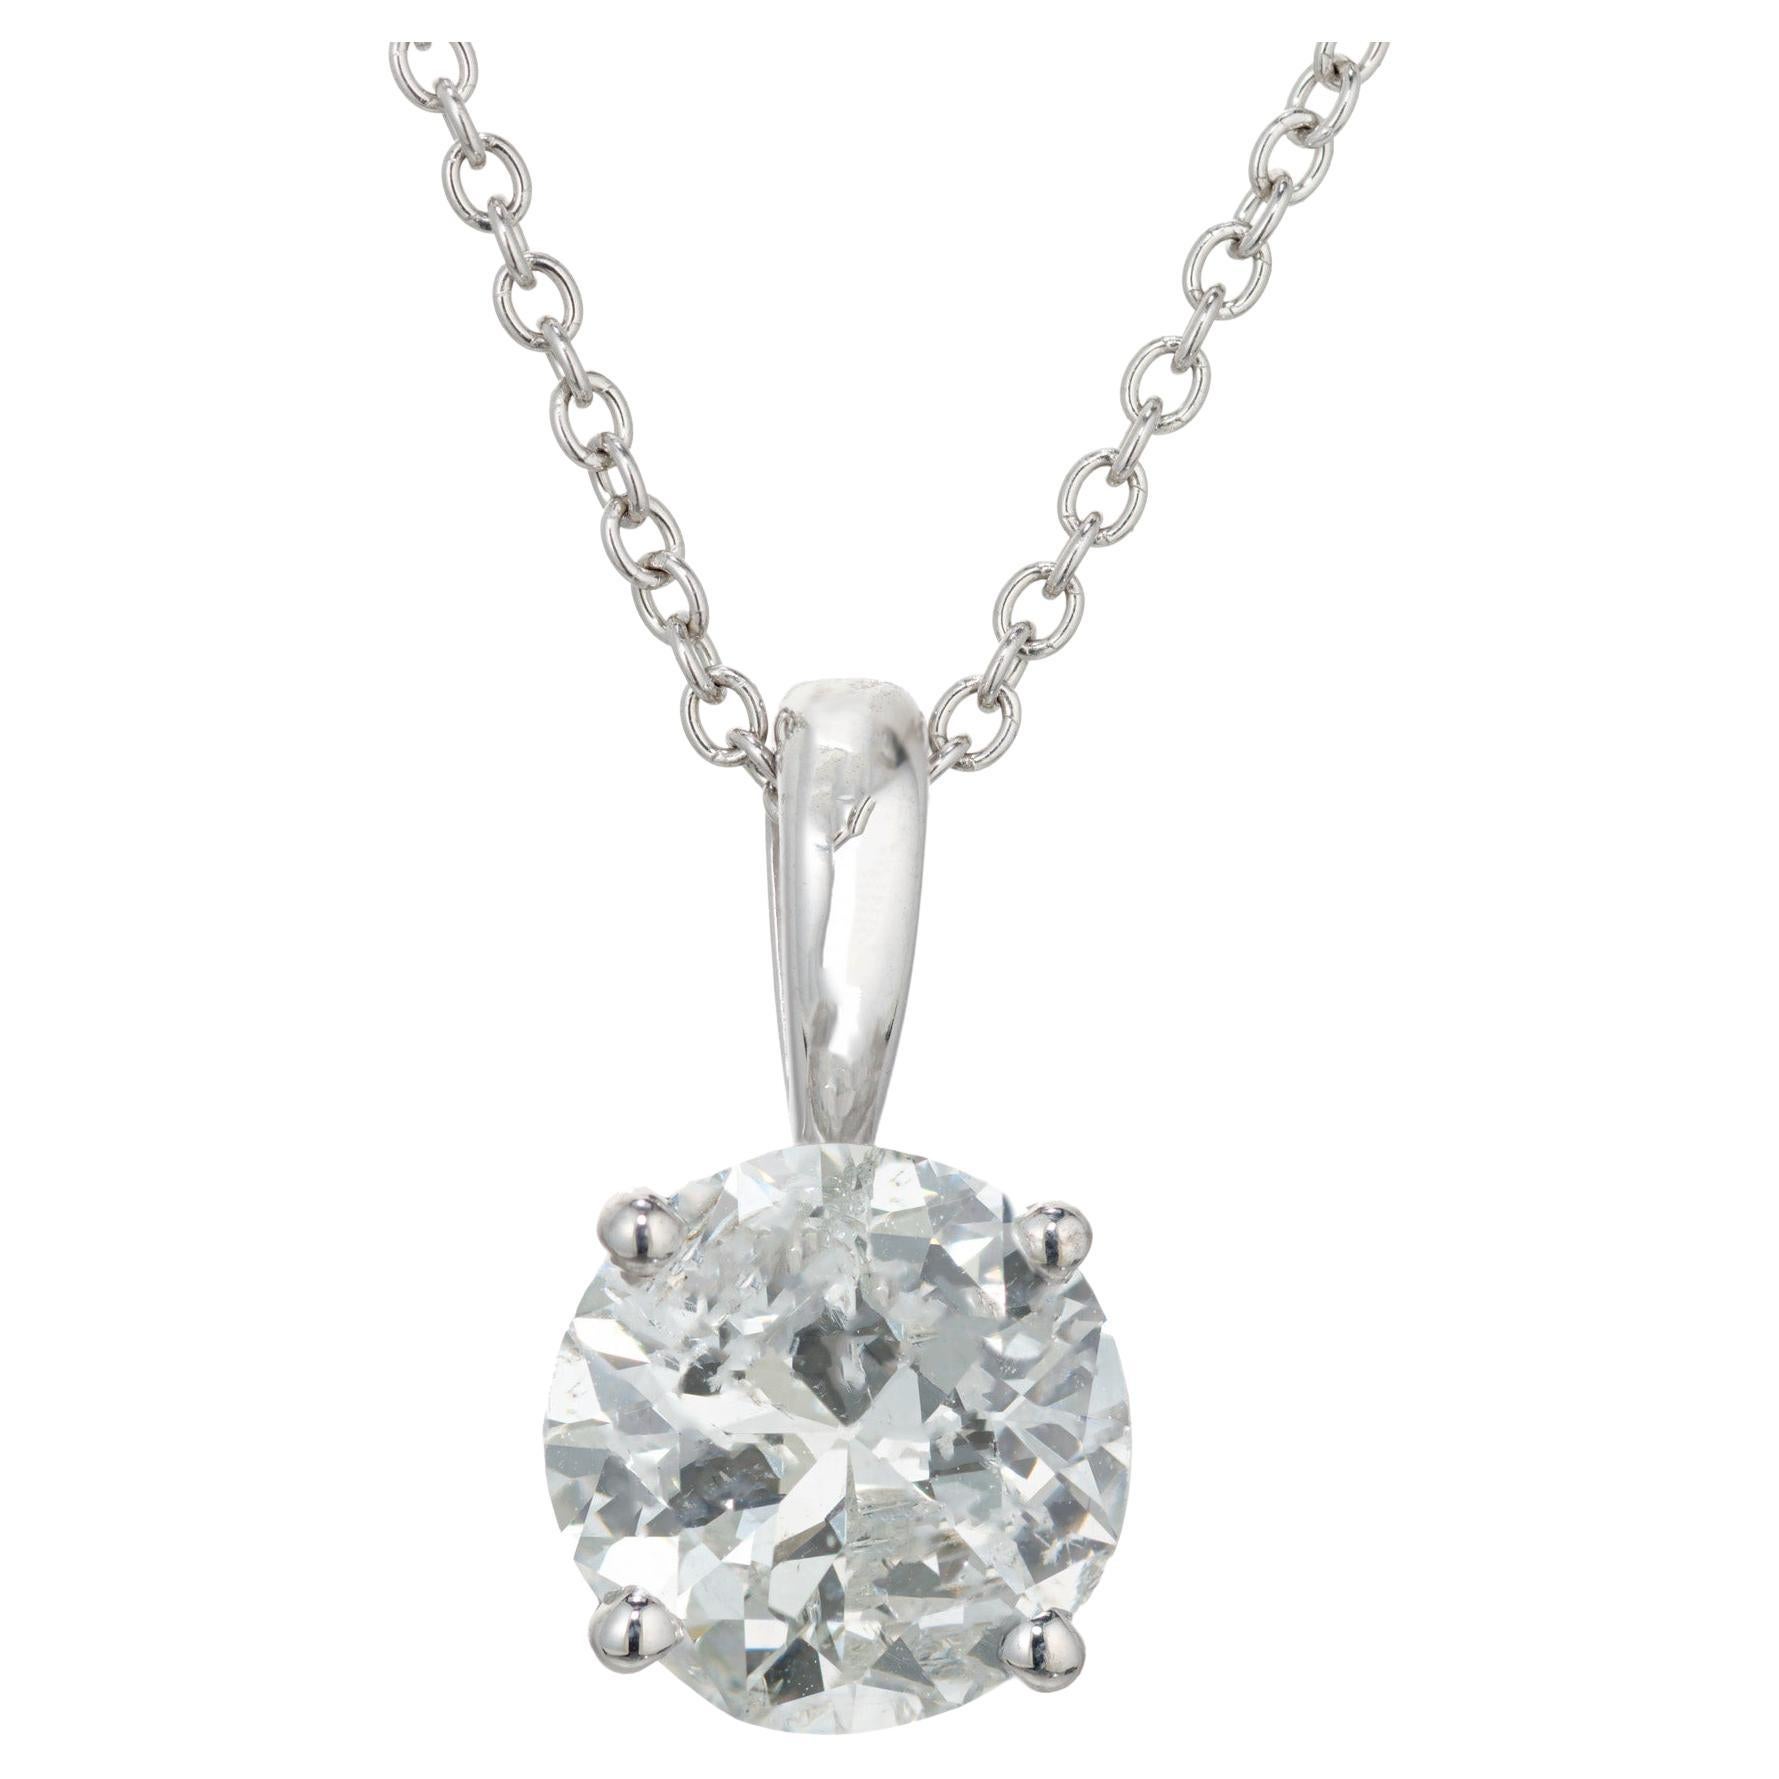 Platin-Halskette mit EGL-zertifiziertem 1,60 Karat rundem Diamant-Anhänger von Peter Suchy